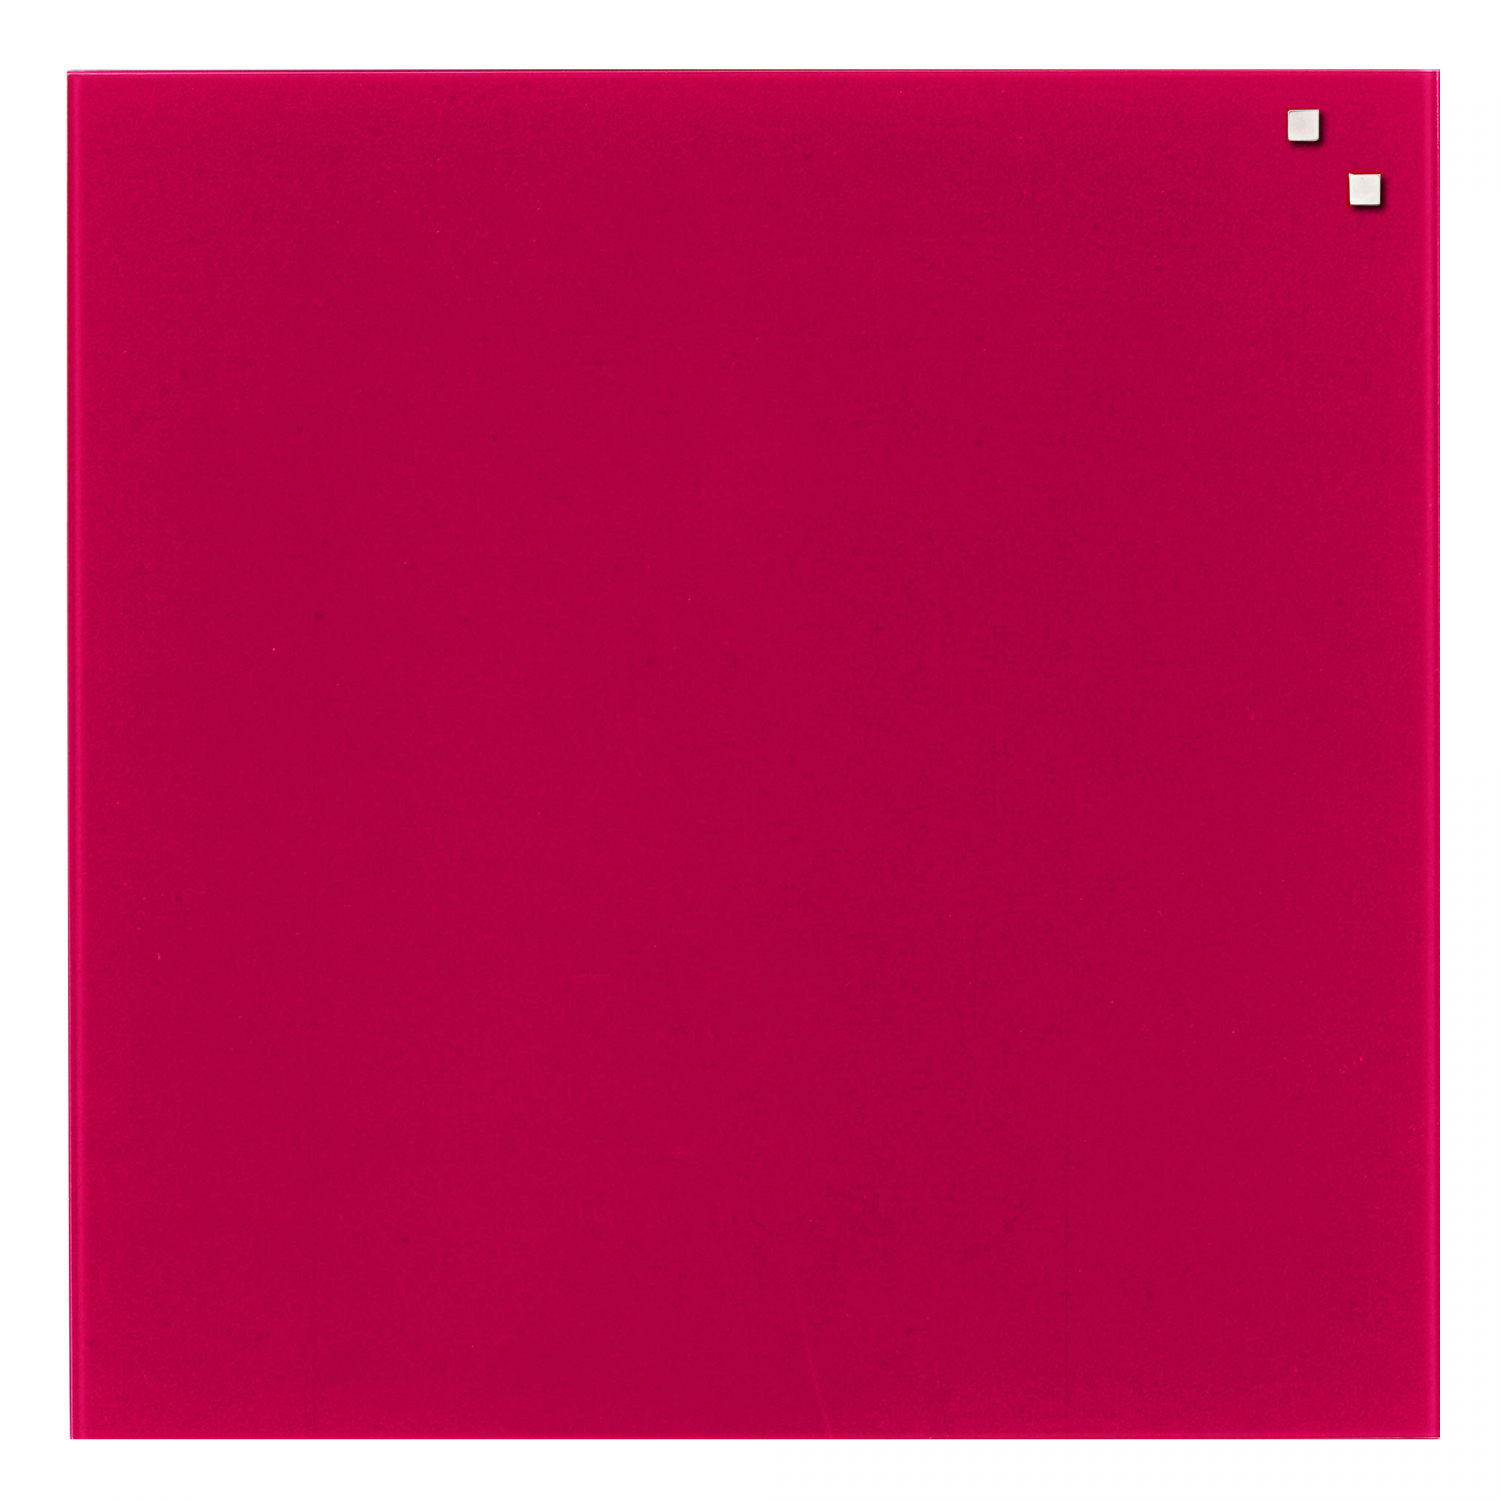 Billede af 45 x 45 cm. Rød Magnetisk Glastavle hos Naga.dk